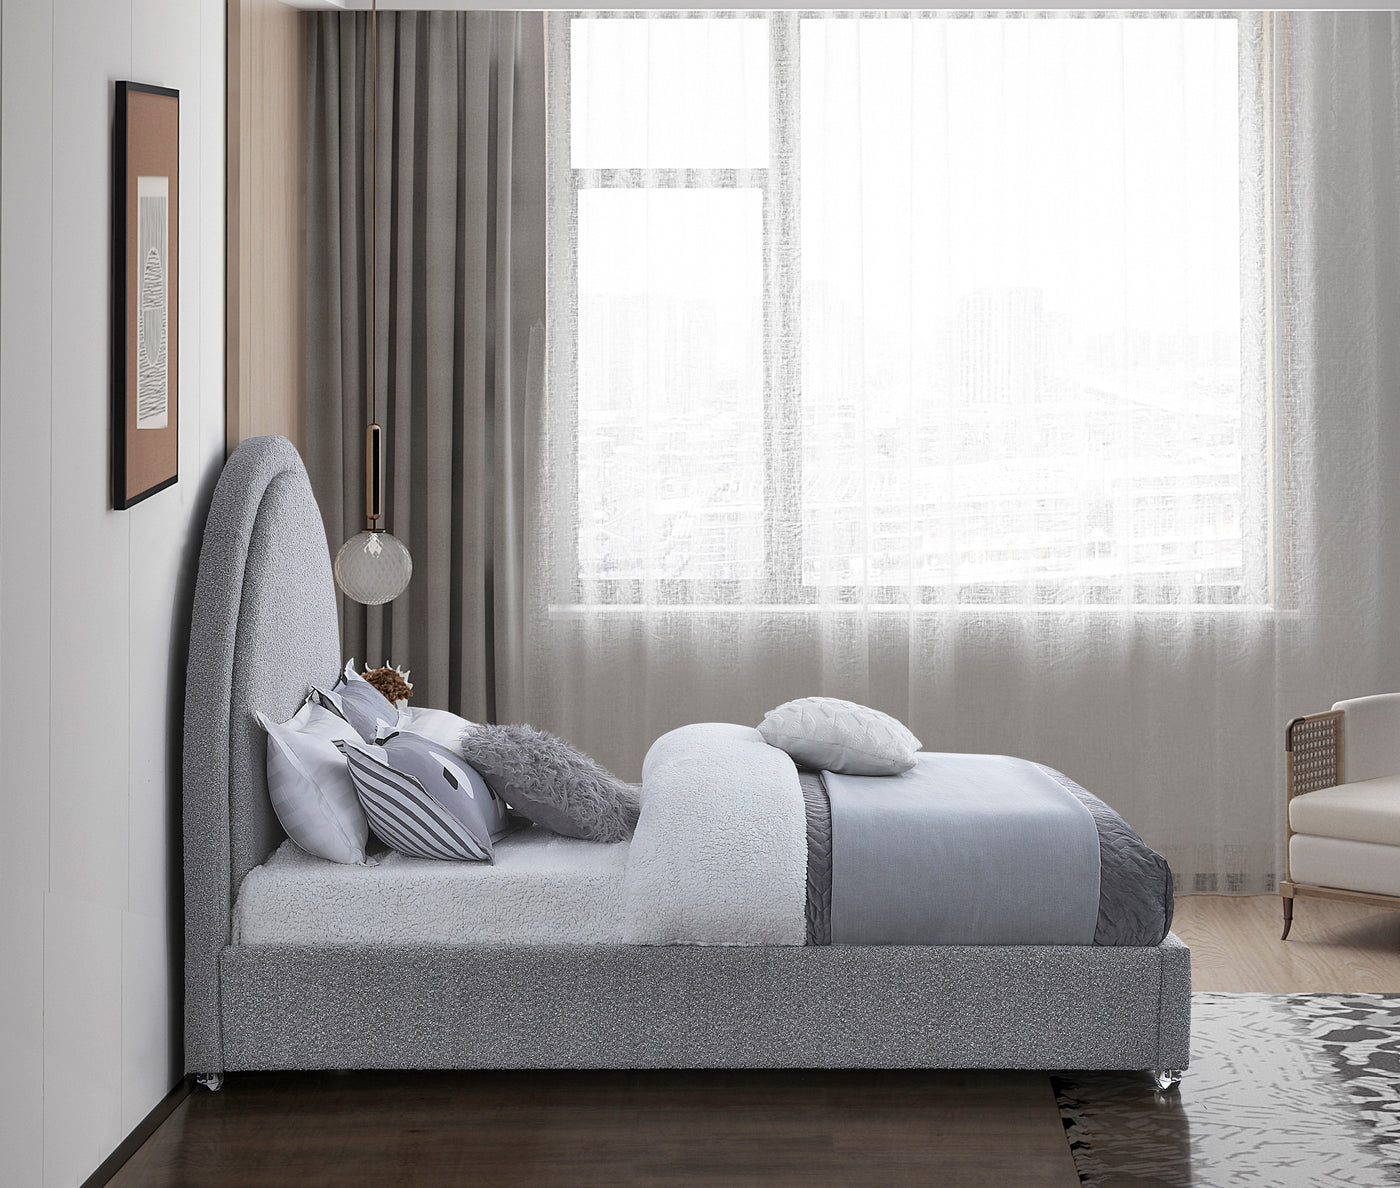 Milo Bed-Beds-Jennifer Furniture